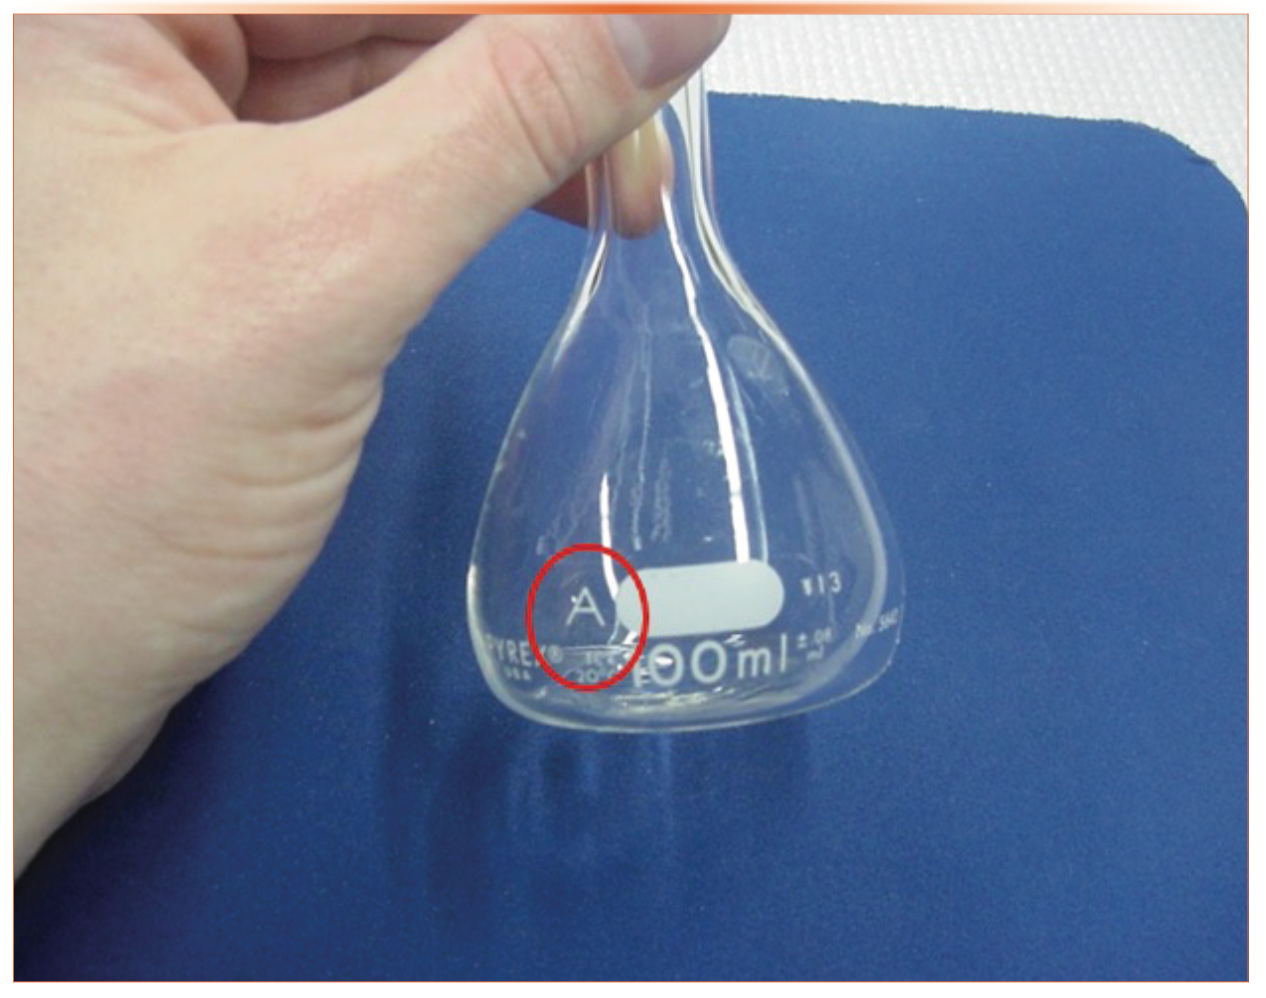 FIGURE 1: Close-up photograph of a 100 mL Class A volumetric flask.